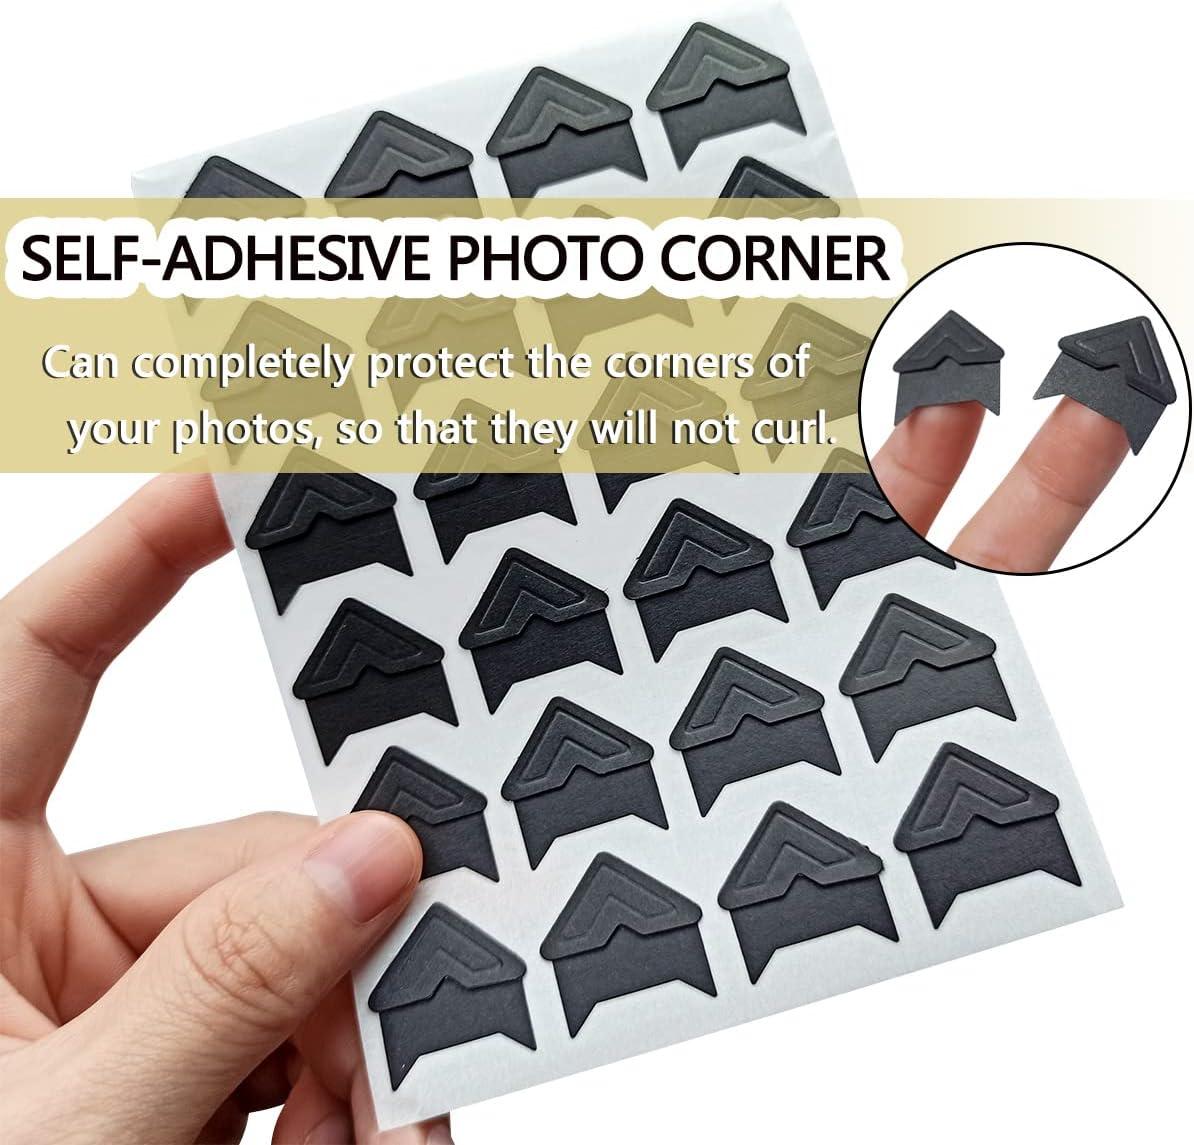 Self-Adhesive Photo Corners